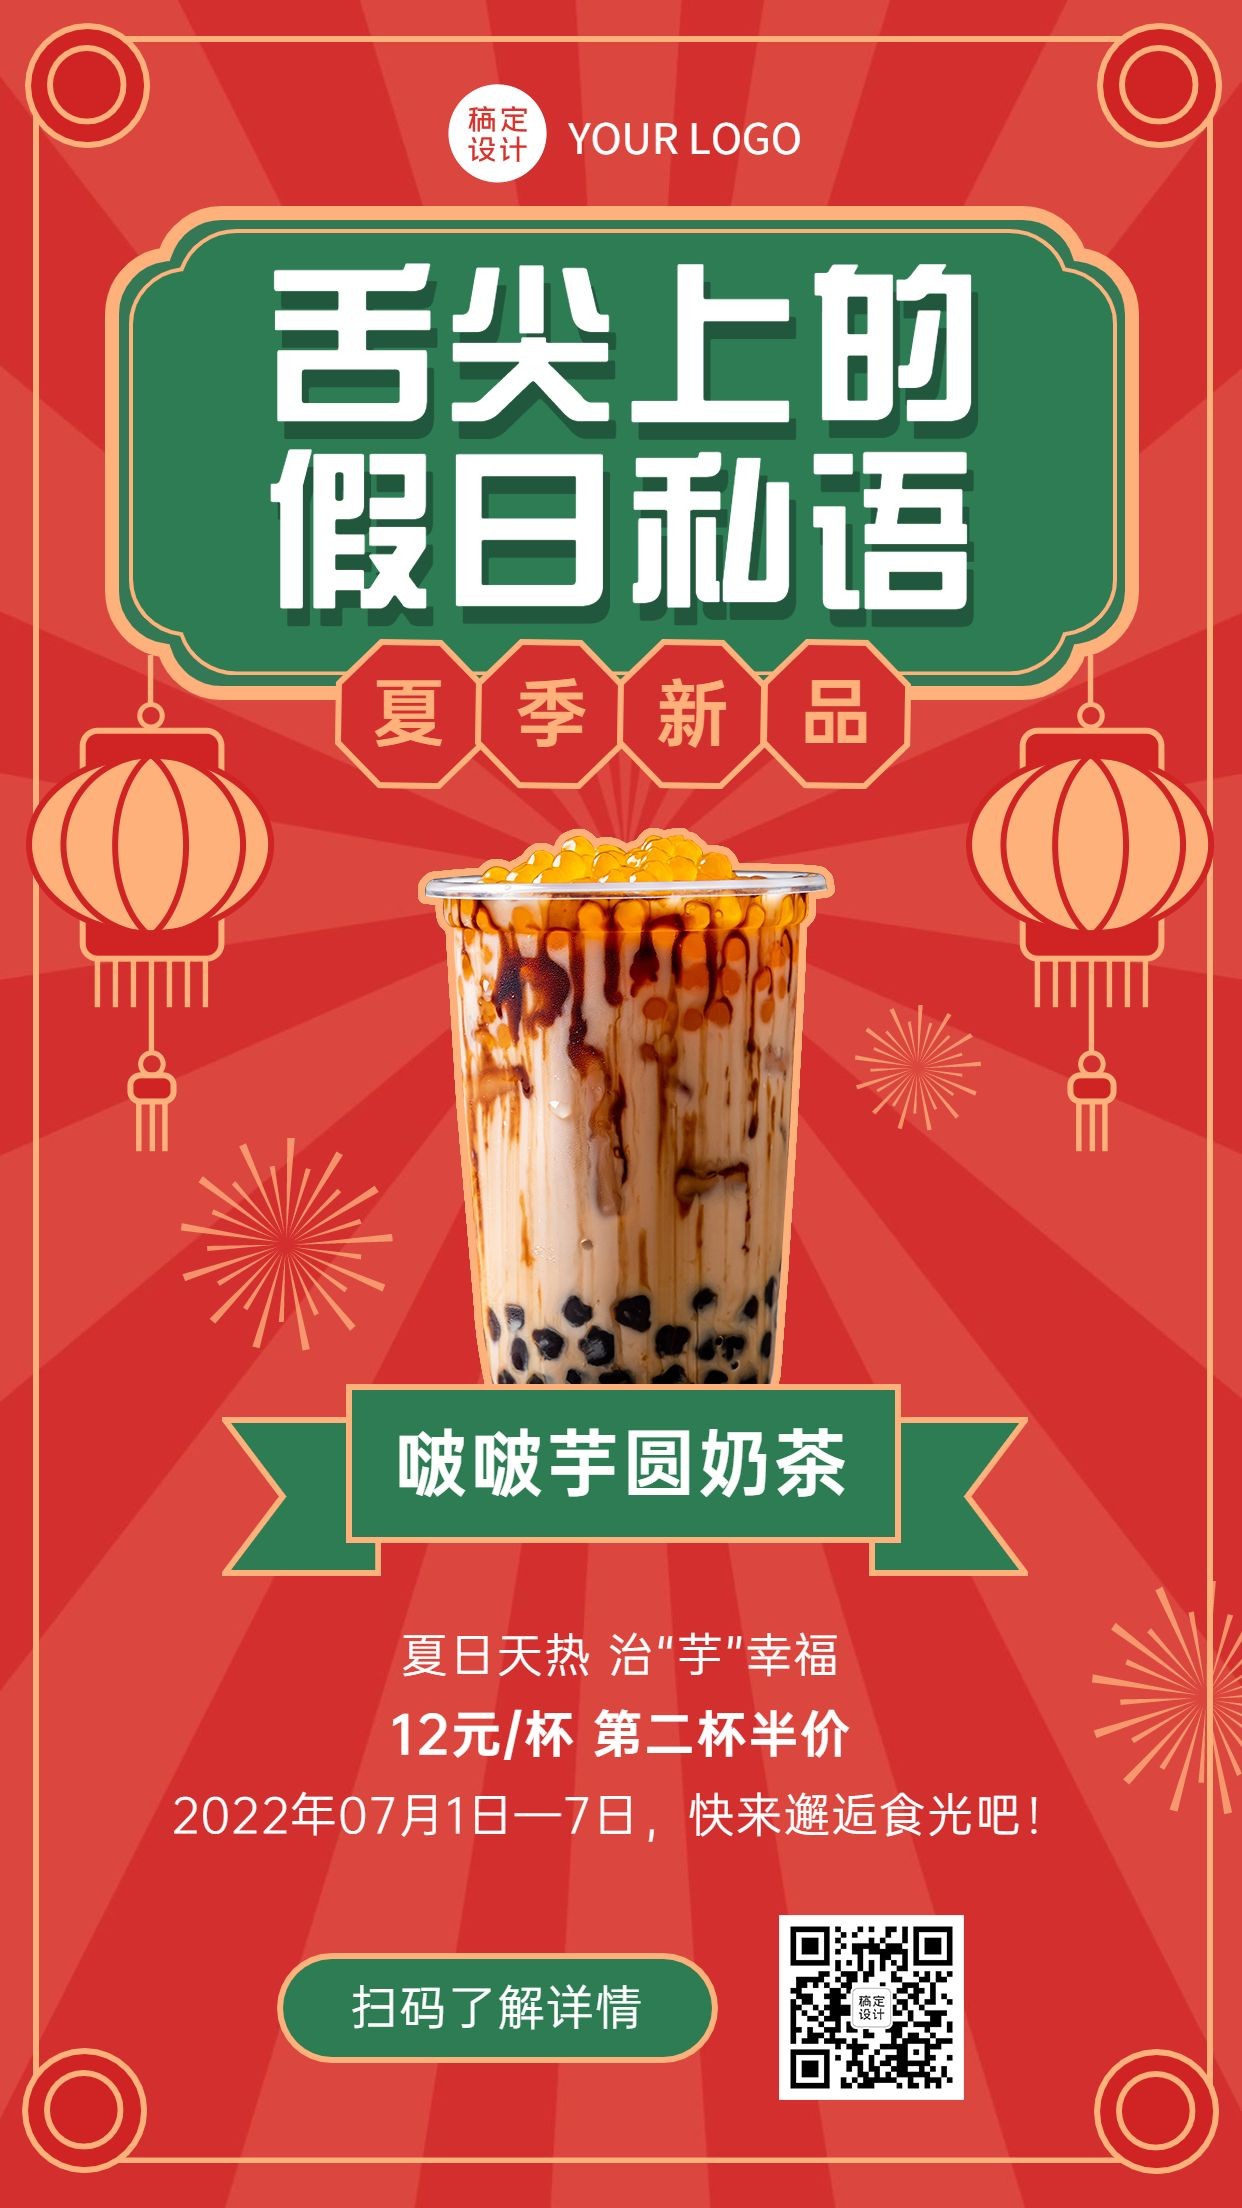 奶茶饮品展示促销活动手机海报